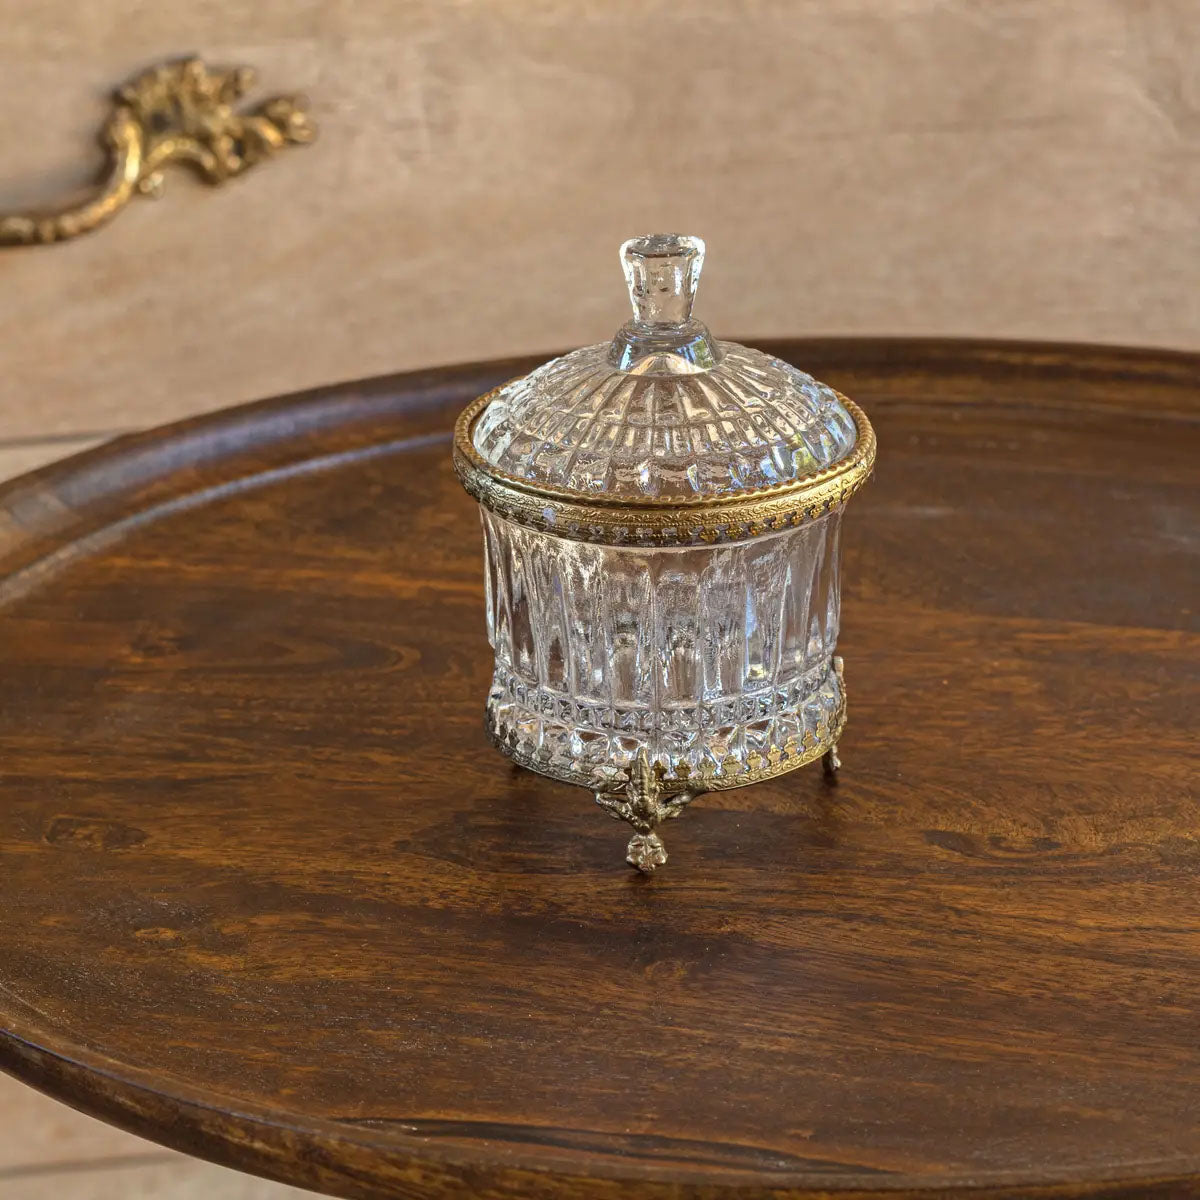 Vintage Style Vanity Jar- More Coming!